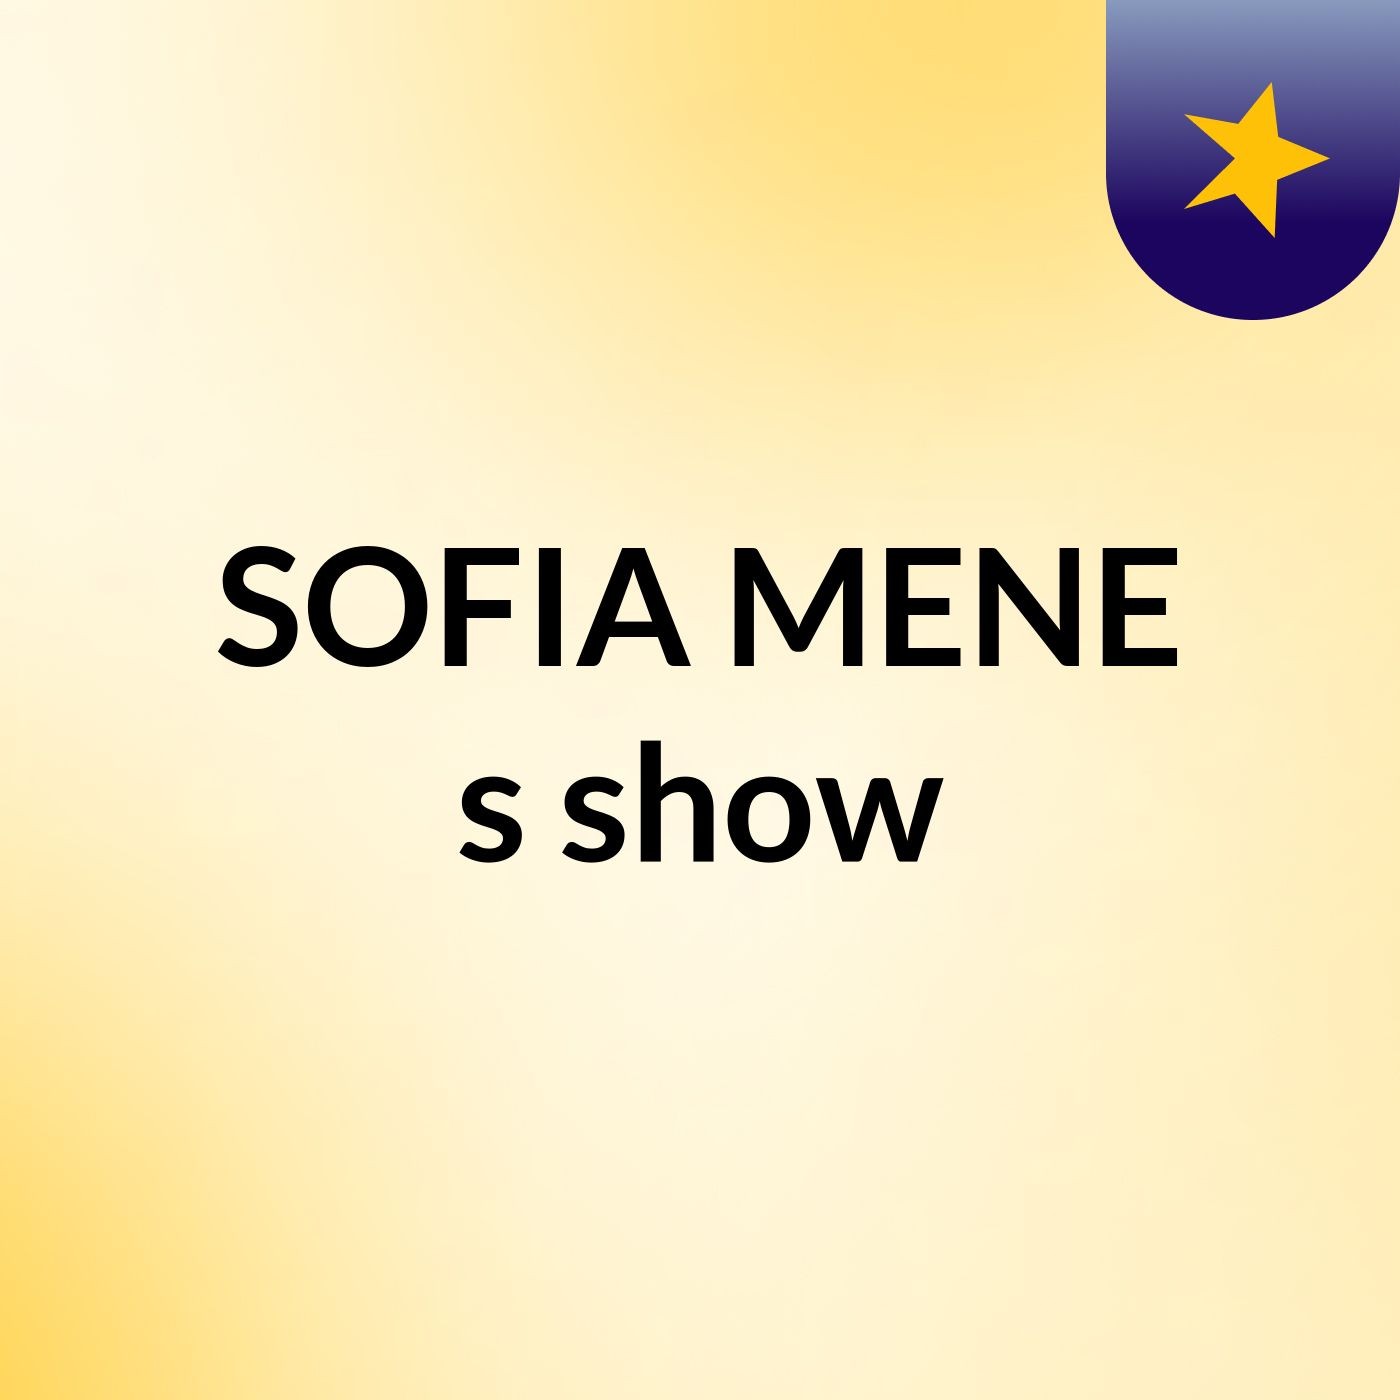 SOFIA MENE's show